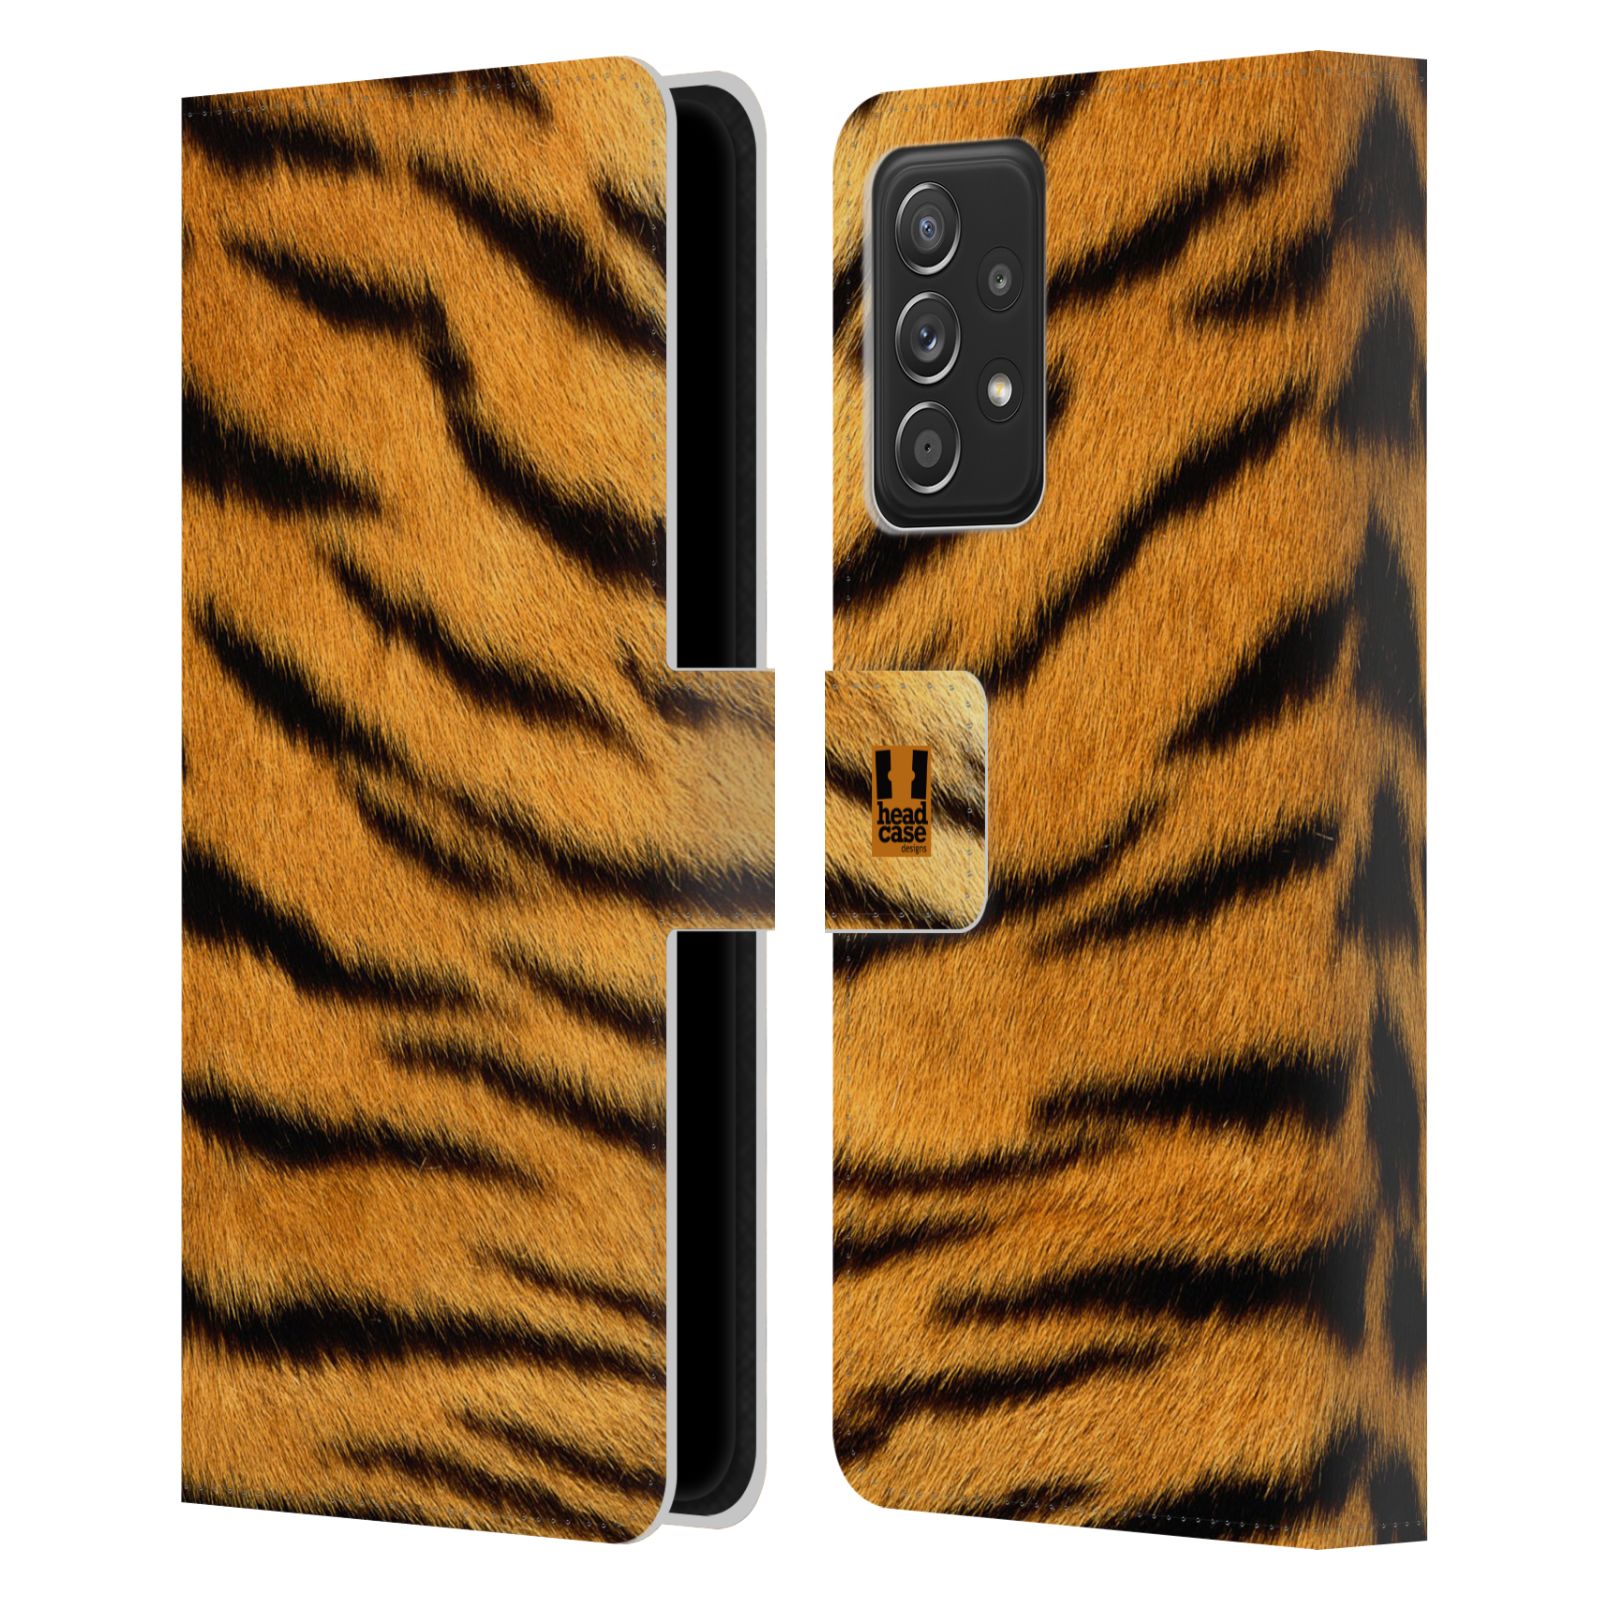 Pouzdro HEAD CASE na mobil Samsung Galaxy A52 / A52 5G / A52s 5G zvíře srst divoká kolekce tygr